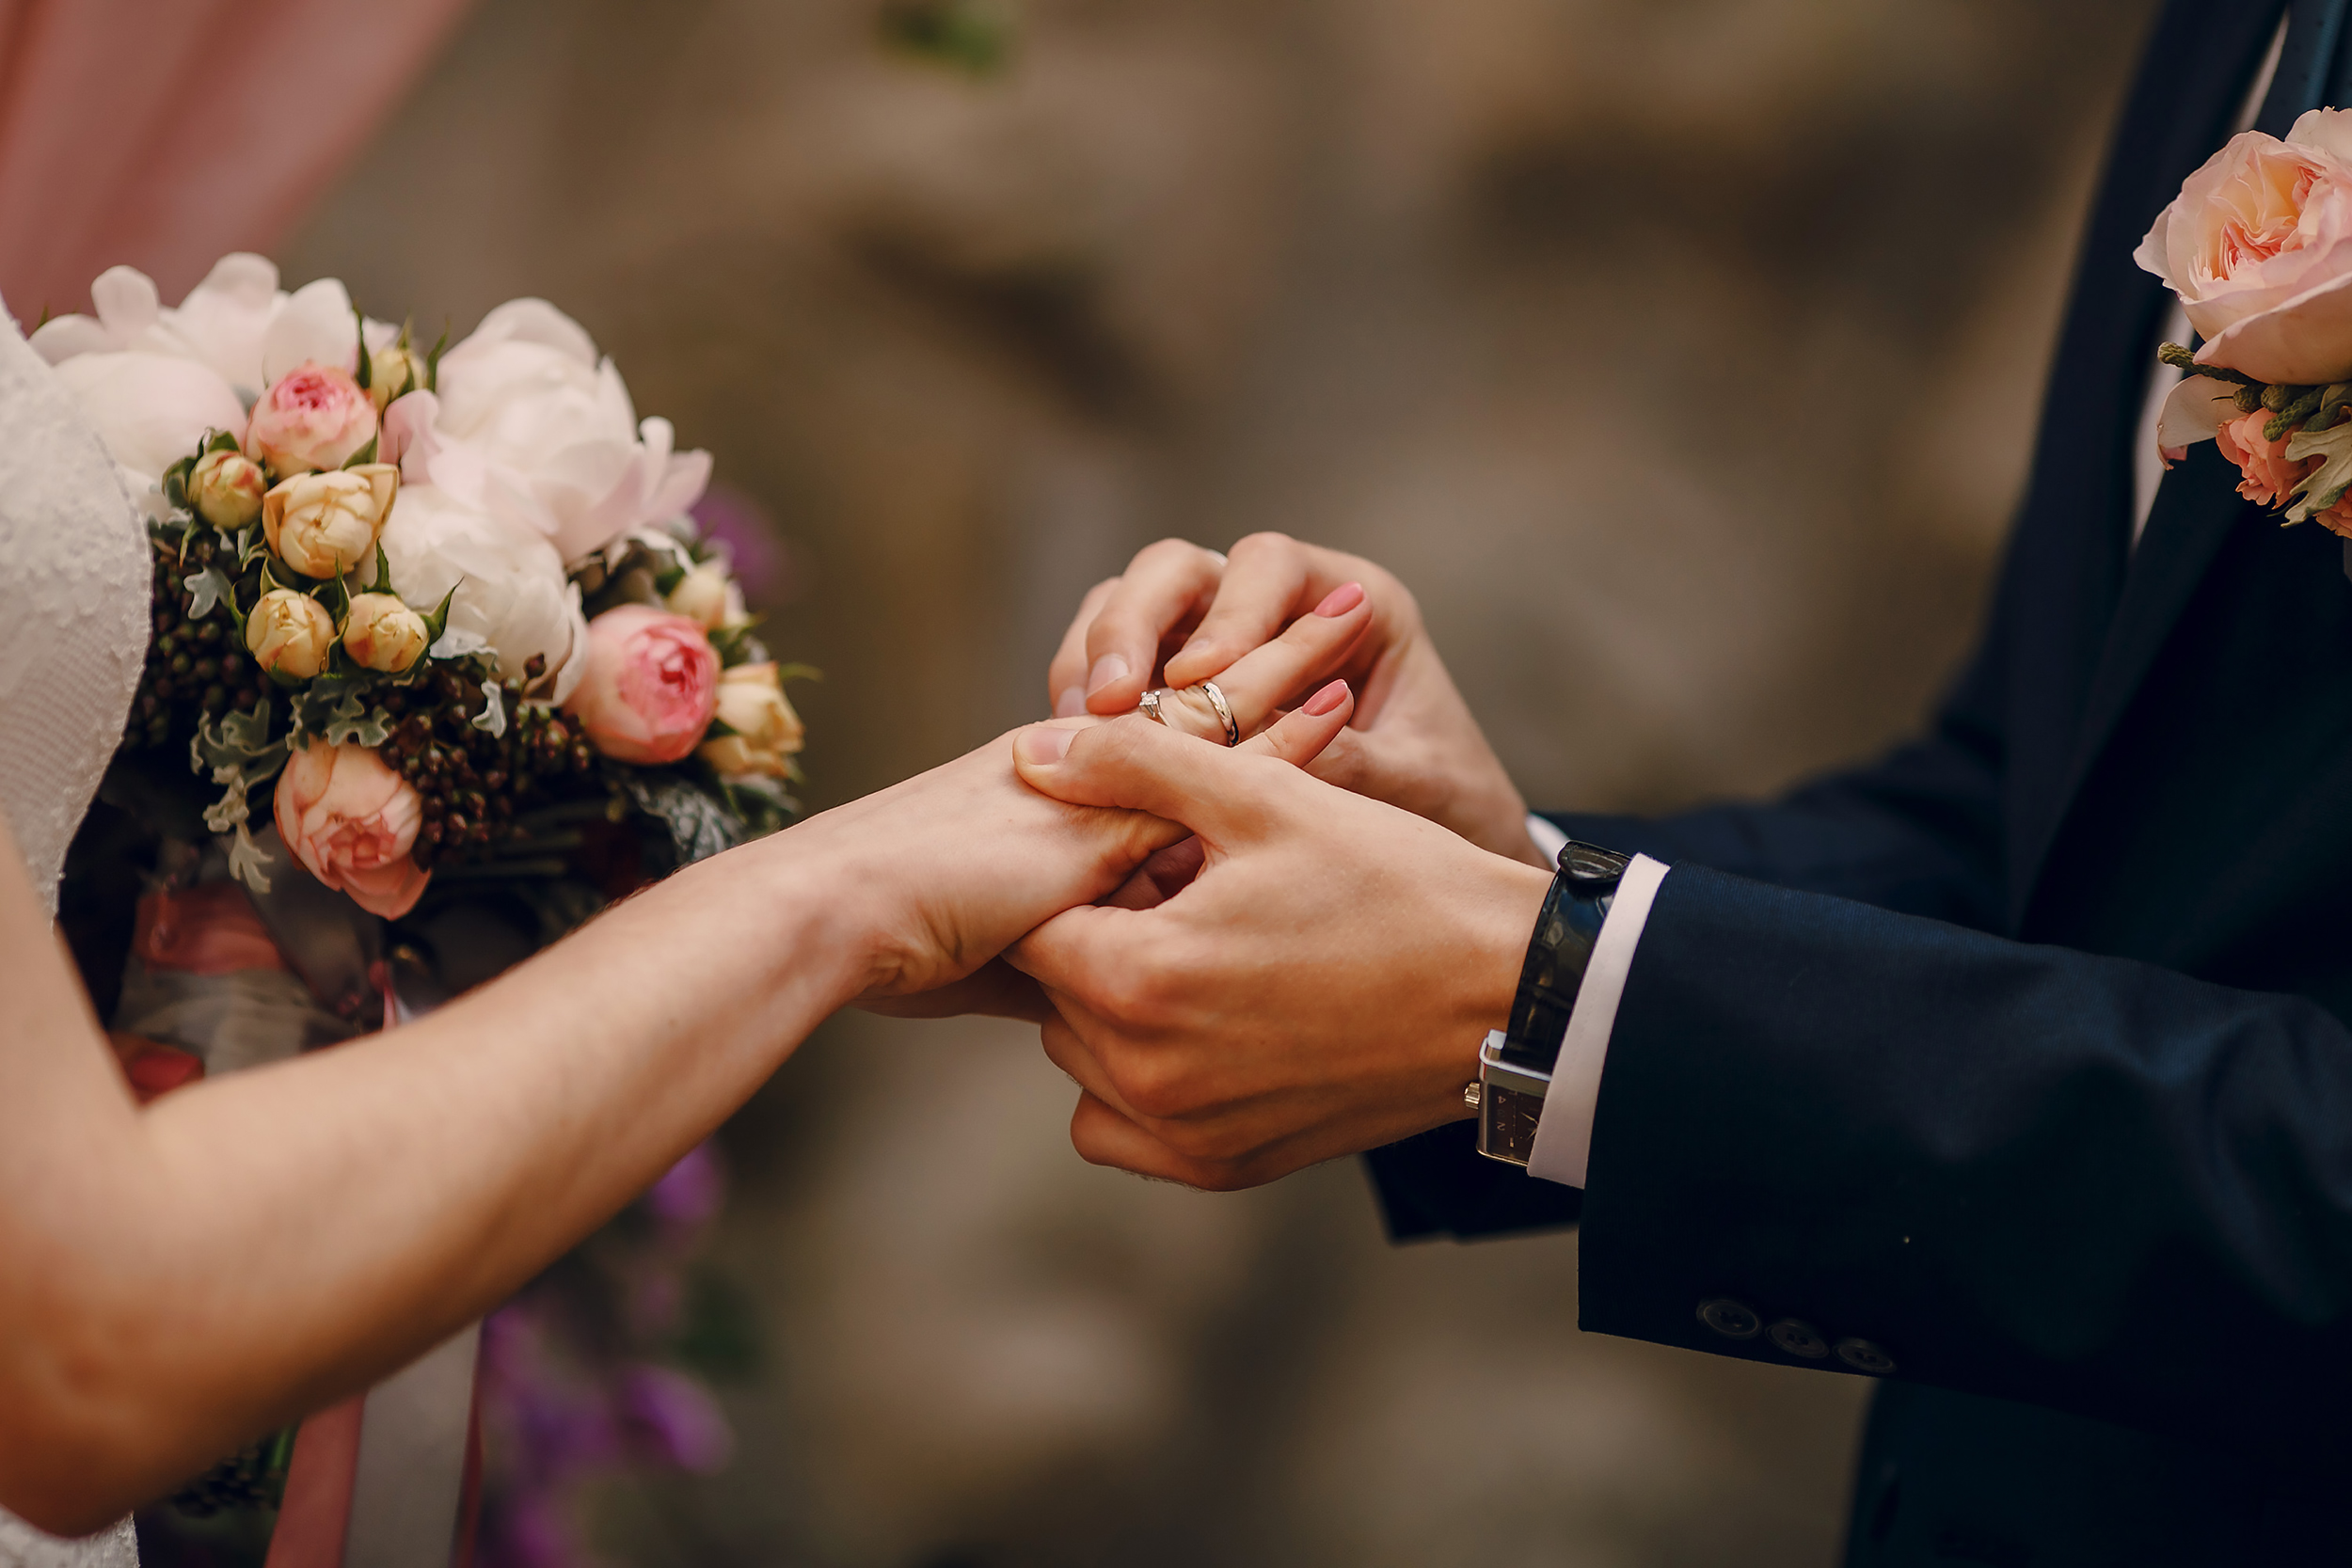 Evlilikdə yaş fərqinin doğurduğu PROBLEMLƏR - “Nikaha girənlər psixoloji müayinə olunmalıdır”